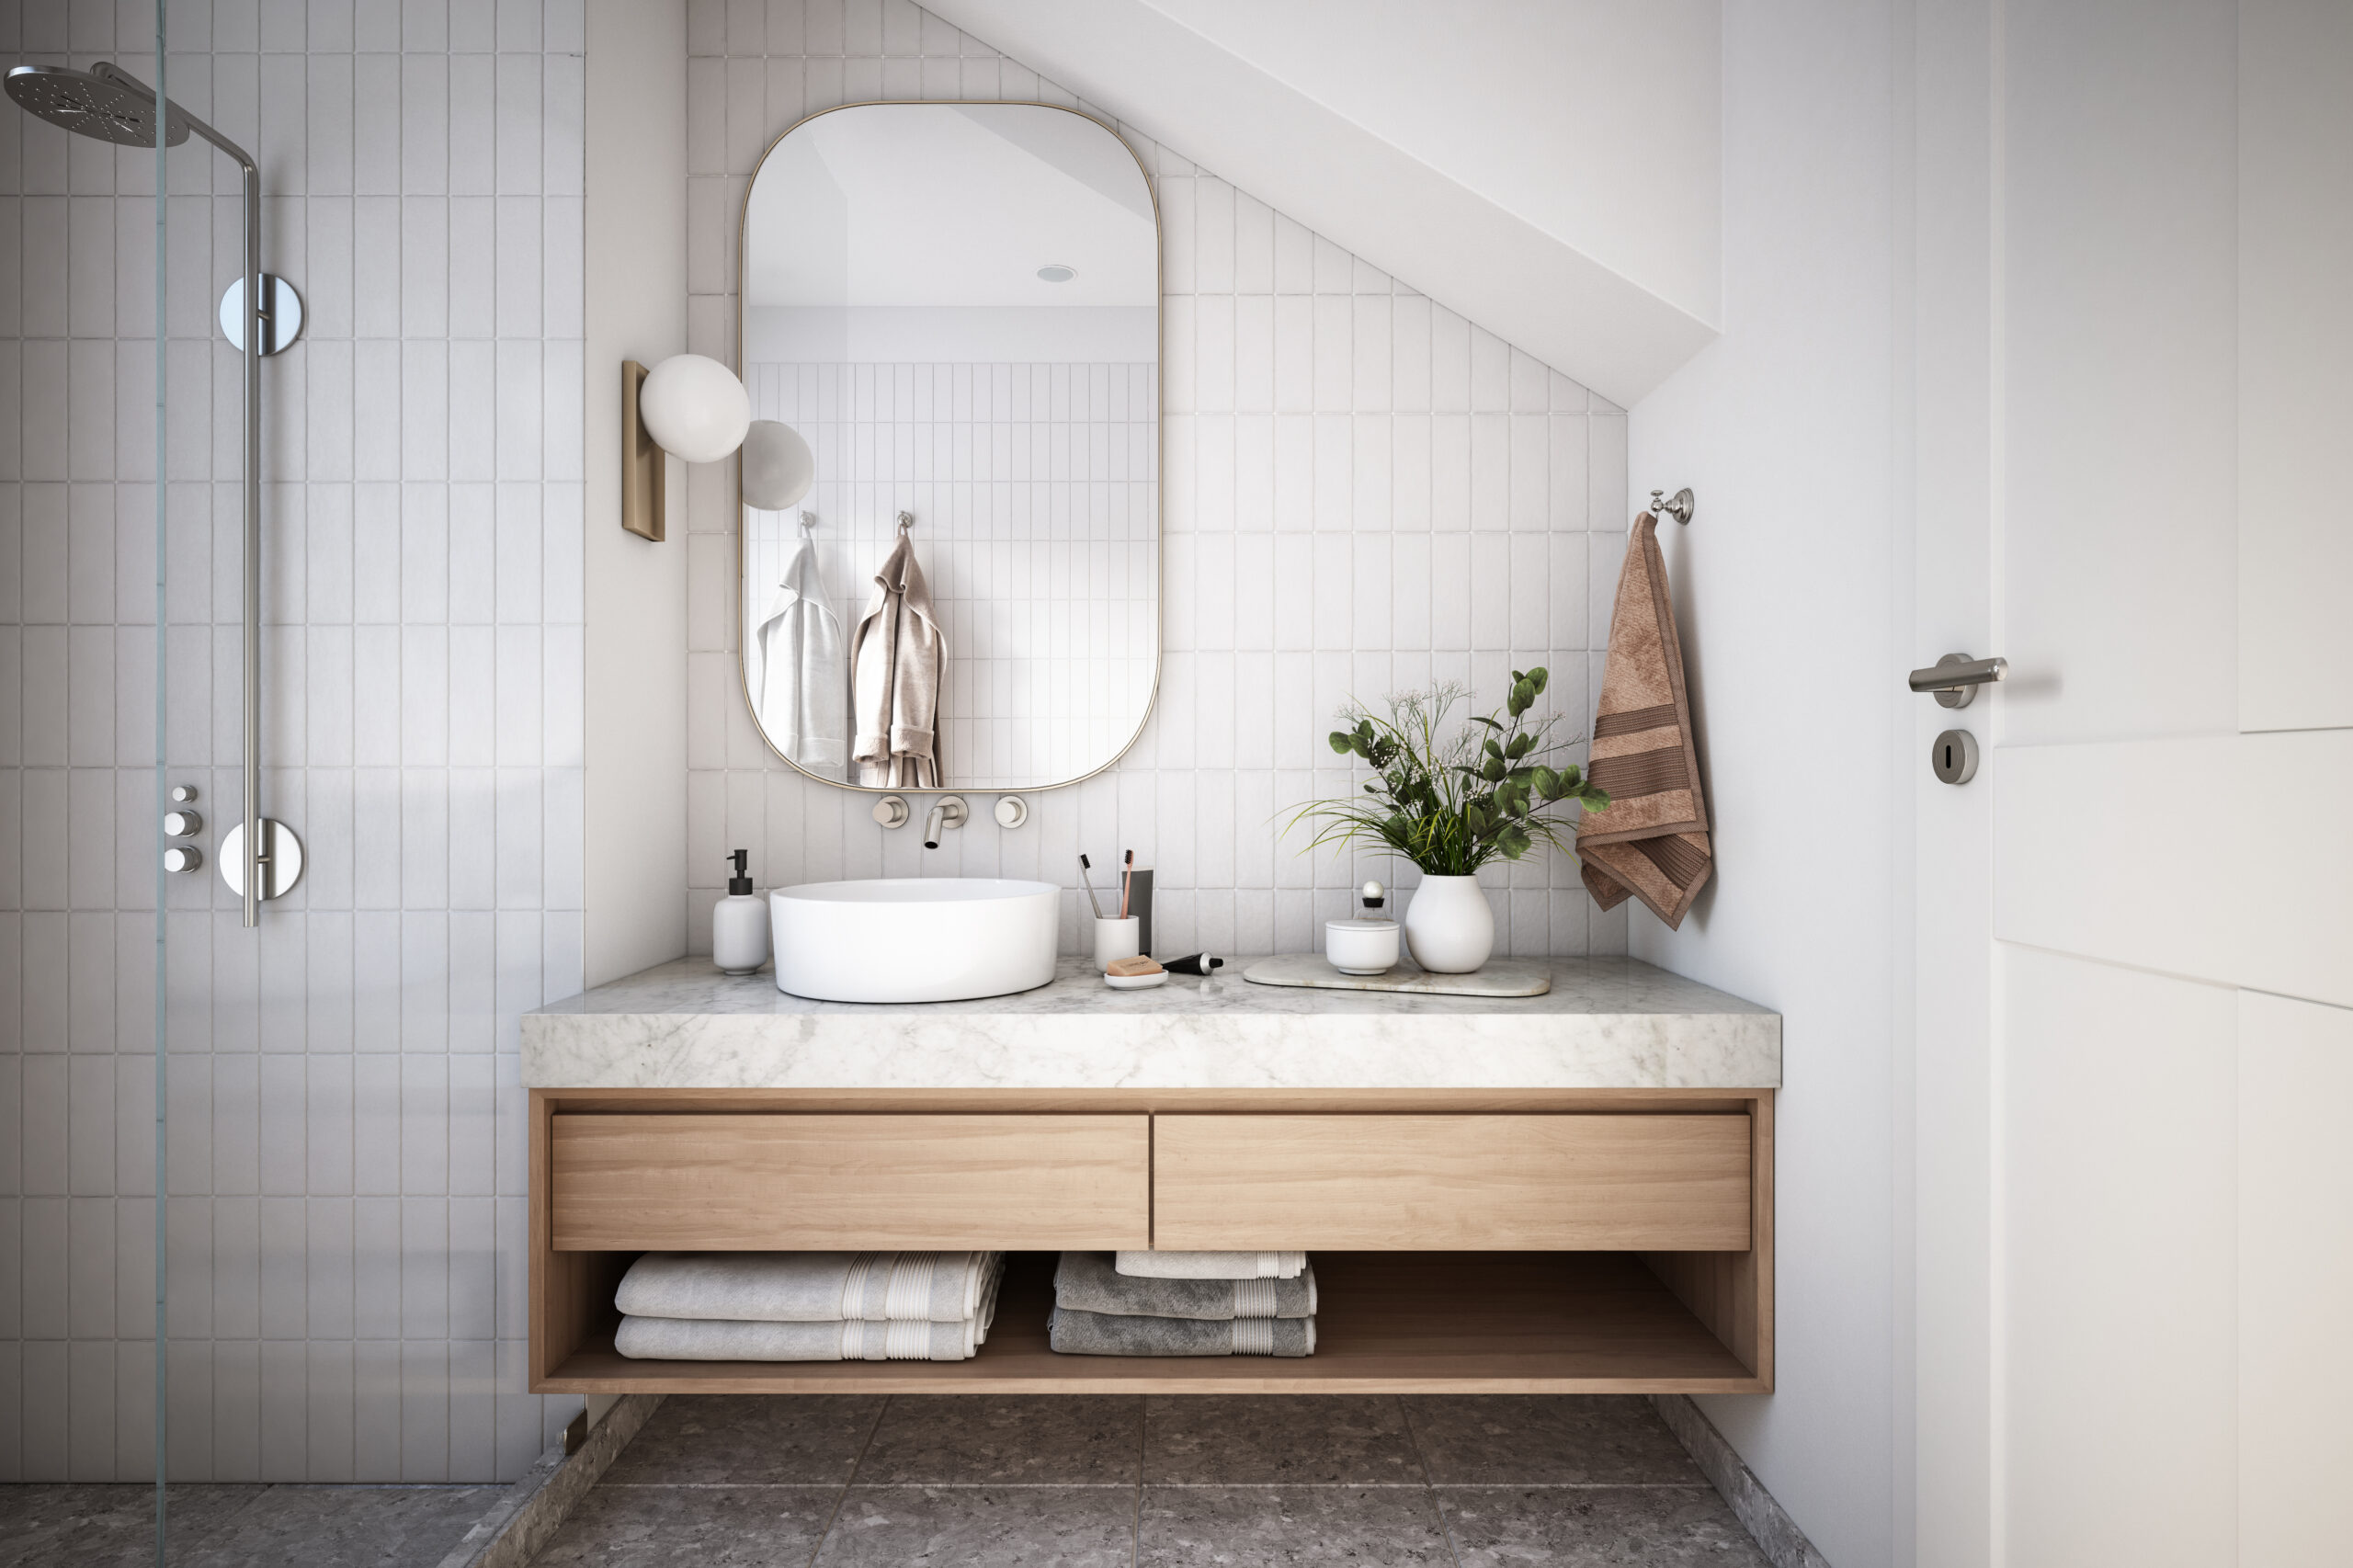 Ylellinen sisustus: Kylpyhuoneen tavara-asetelmat viimeistelee yhtenäiset saippuapullot, rasiat ja kipot. Kuva: iStockphoto